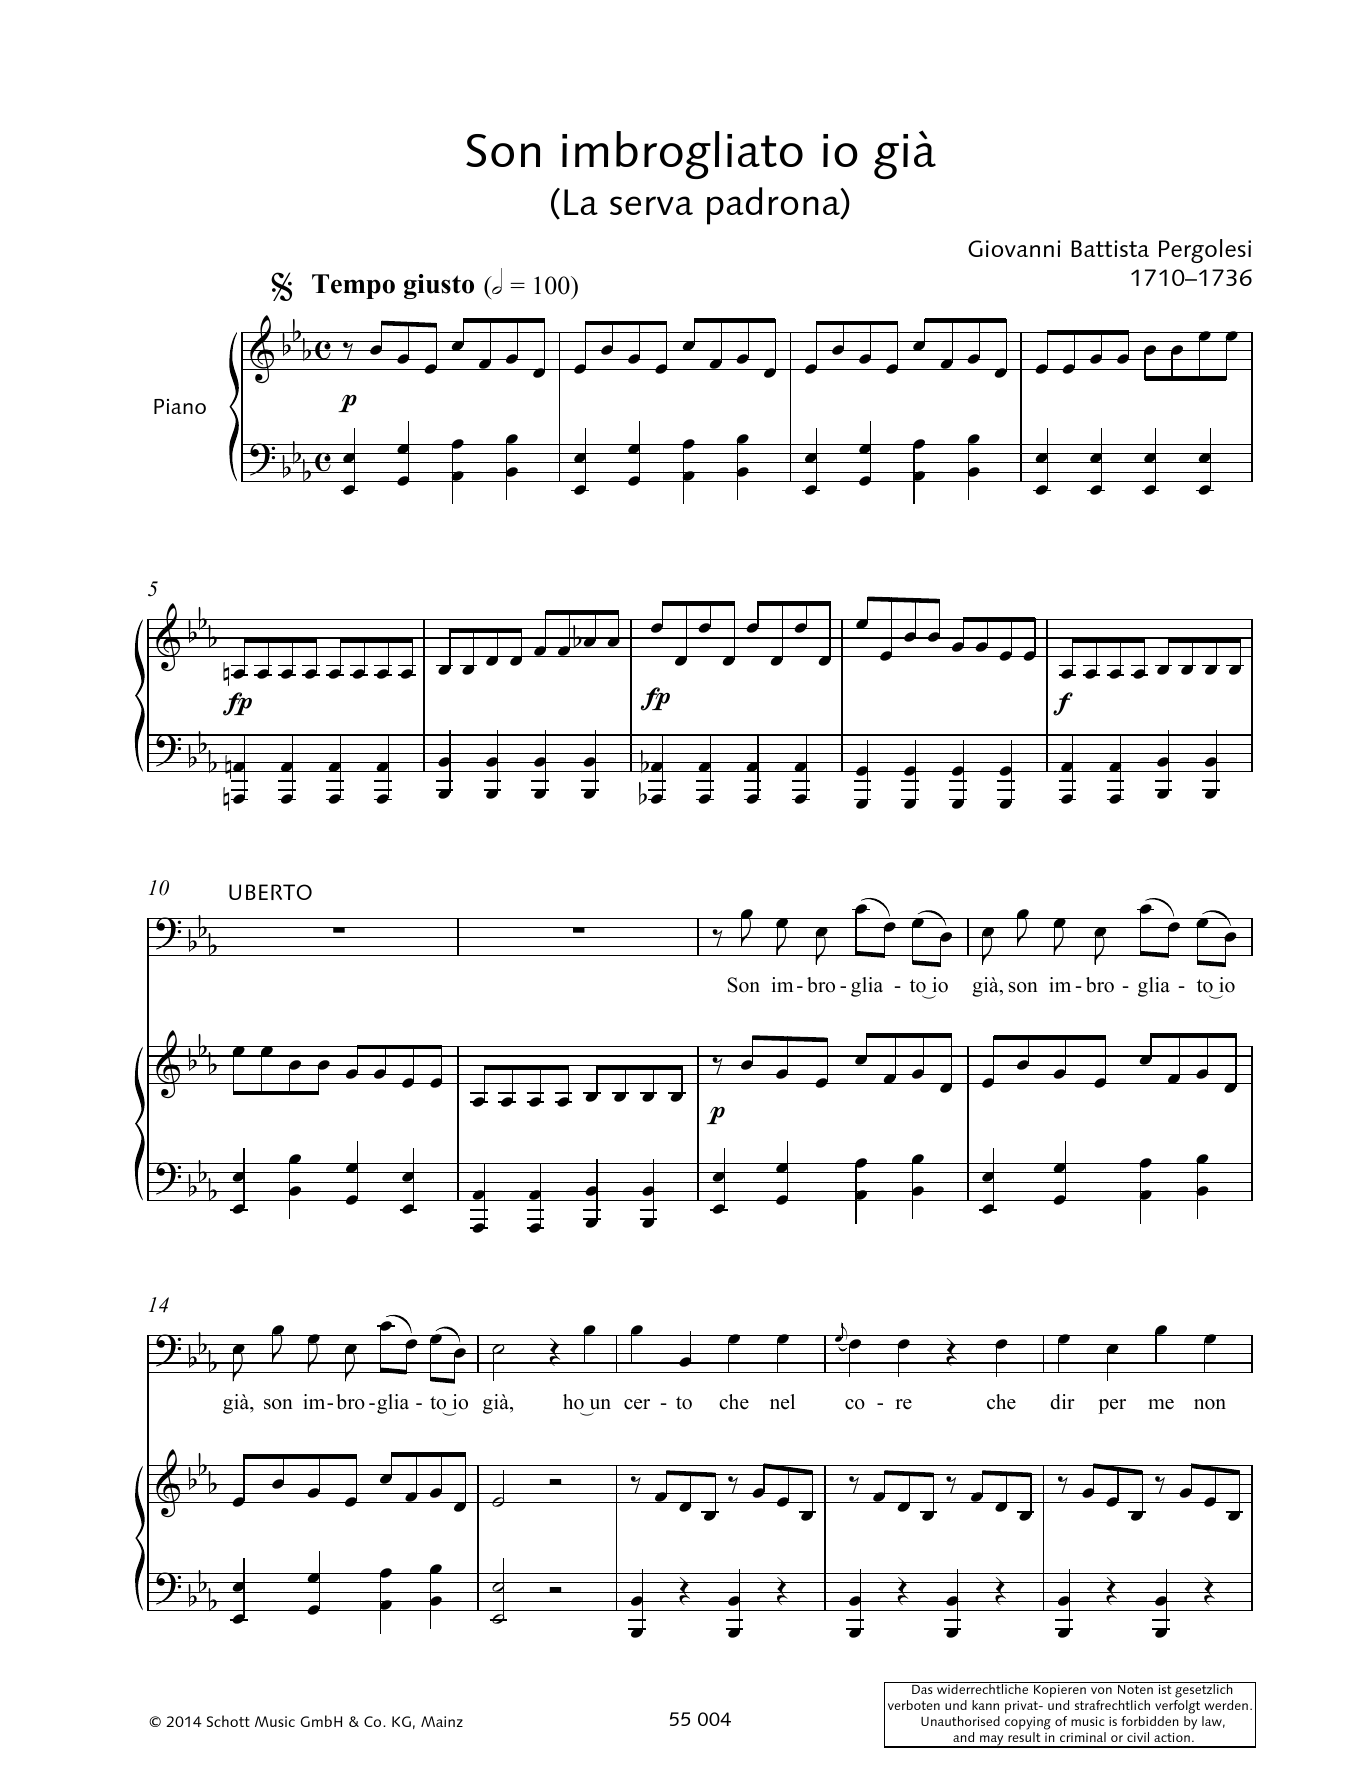 Giovanni Battista Pergolesi Son imbrogliato io già Sheet Music Notes & Chords for Piano & Vocal - Download or Print PDF